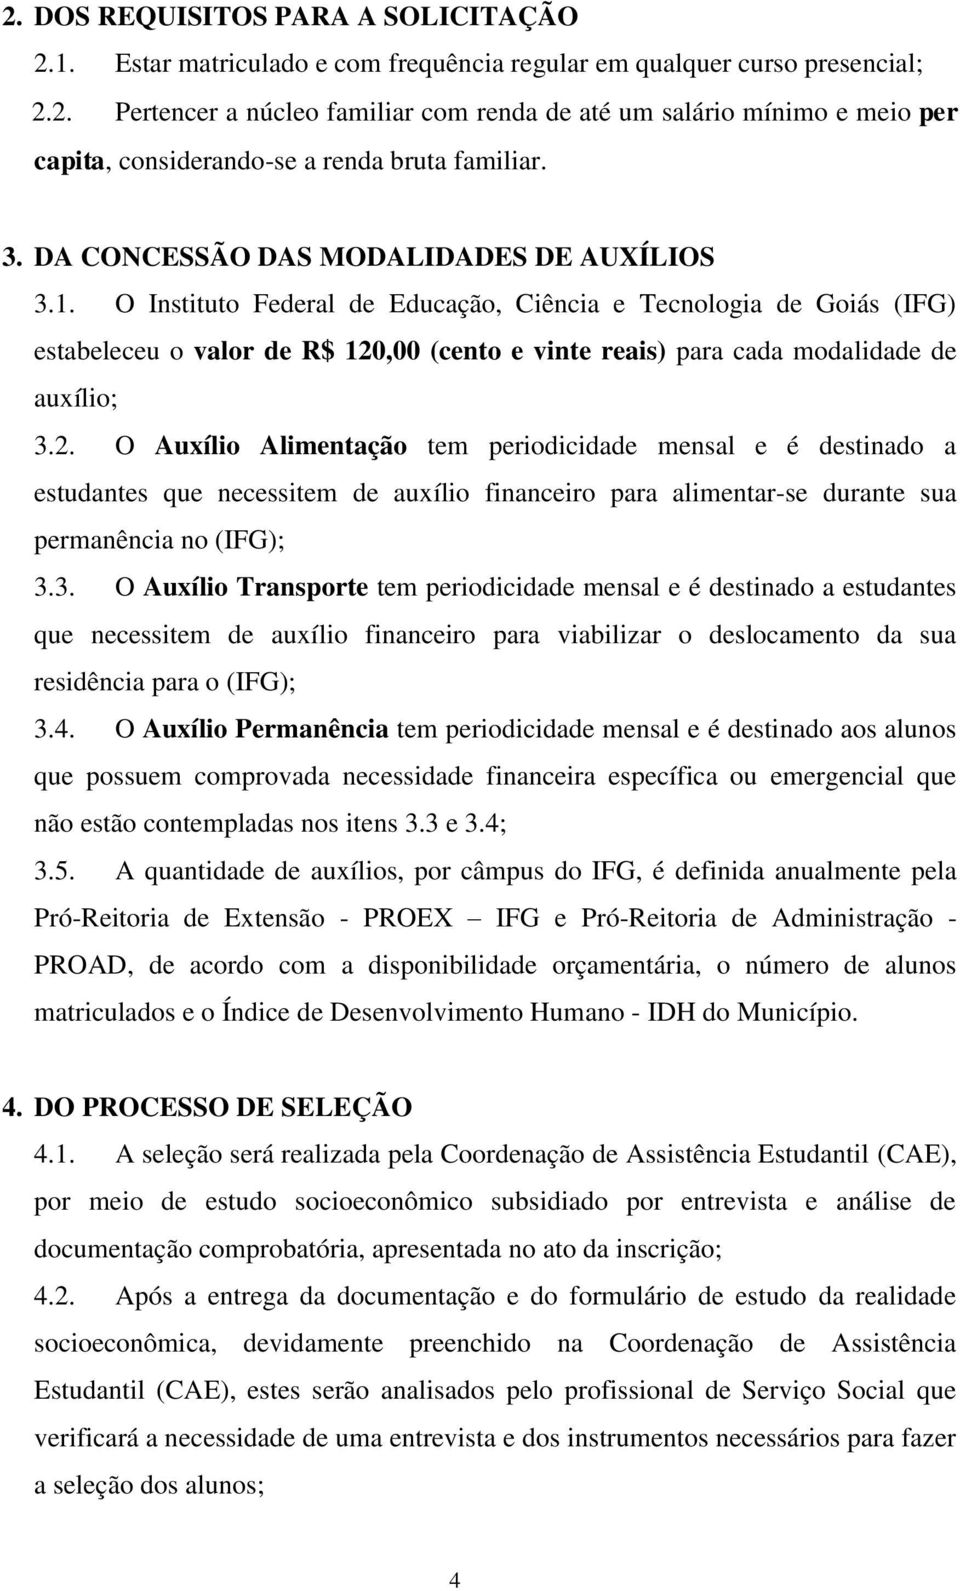 O Instituto Federal de Educação, Ciência e Tecnologia de Goiás (IFG) estabeleceu o valor de R$ 120